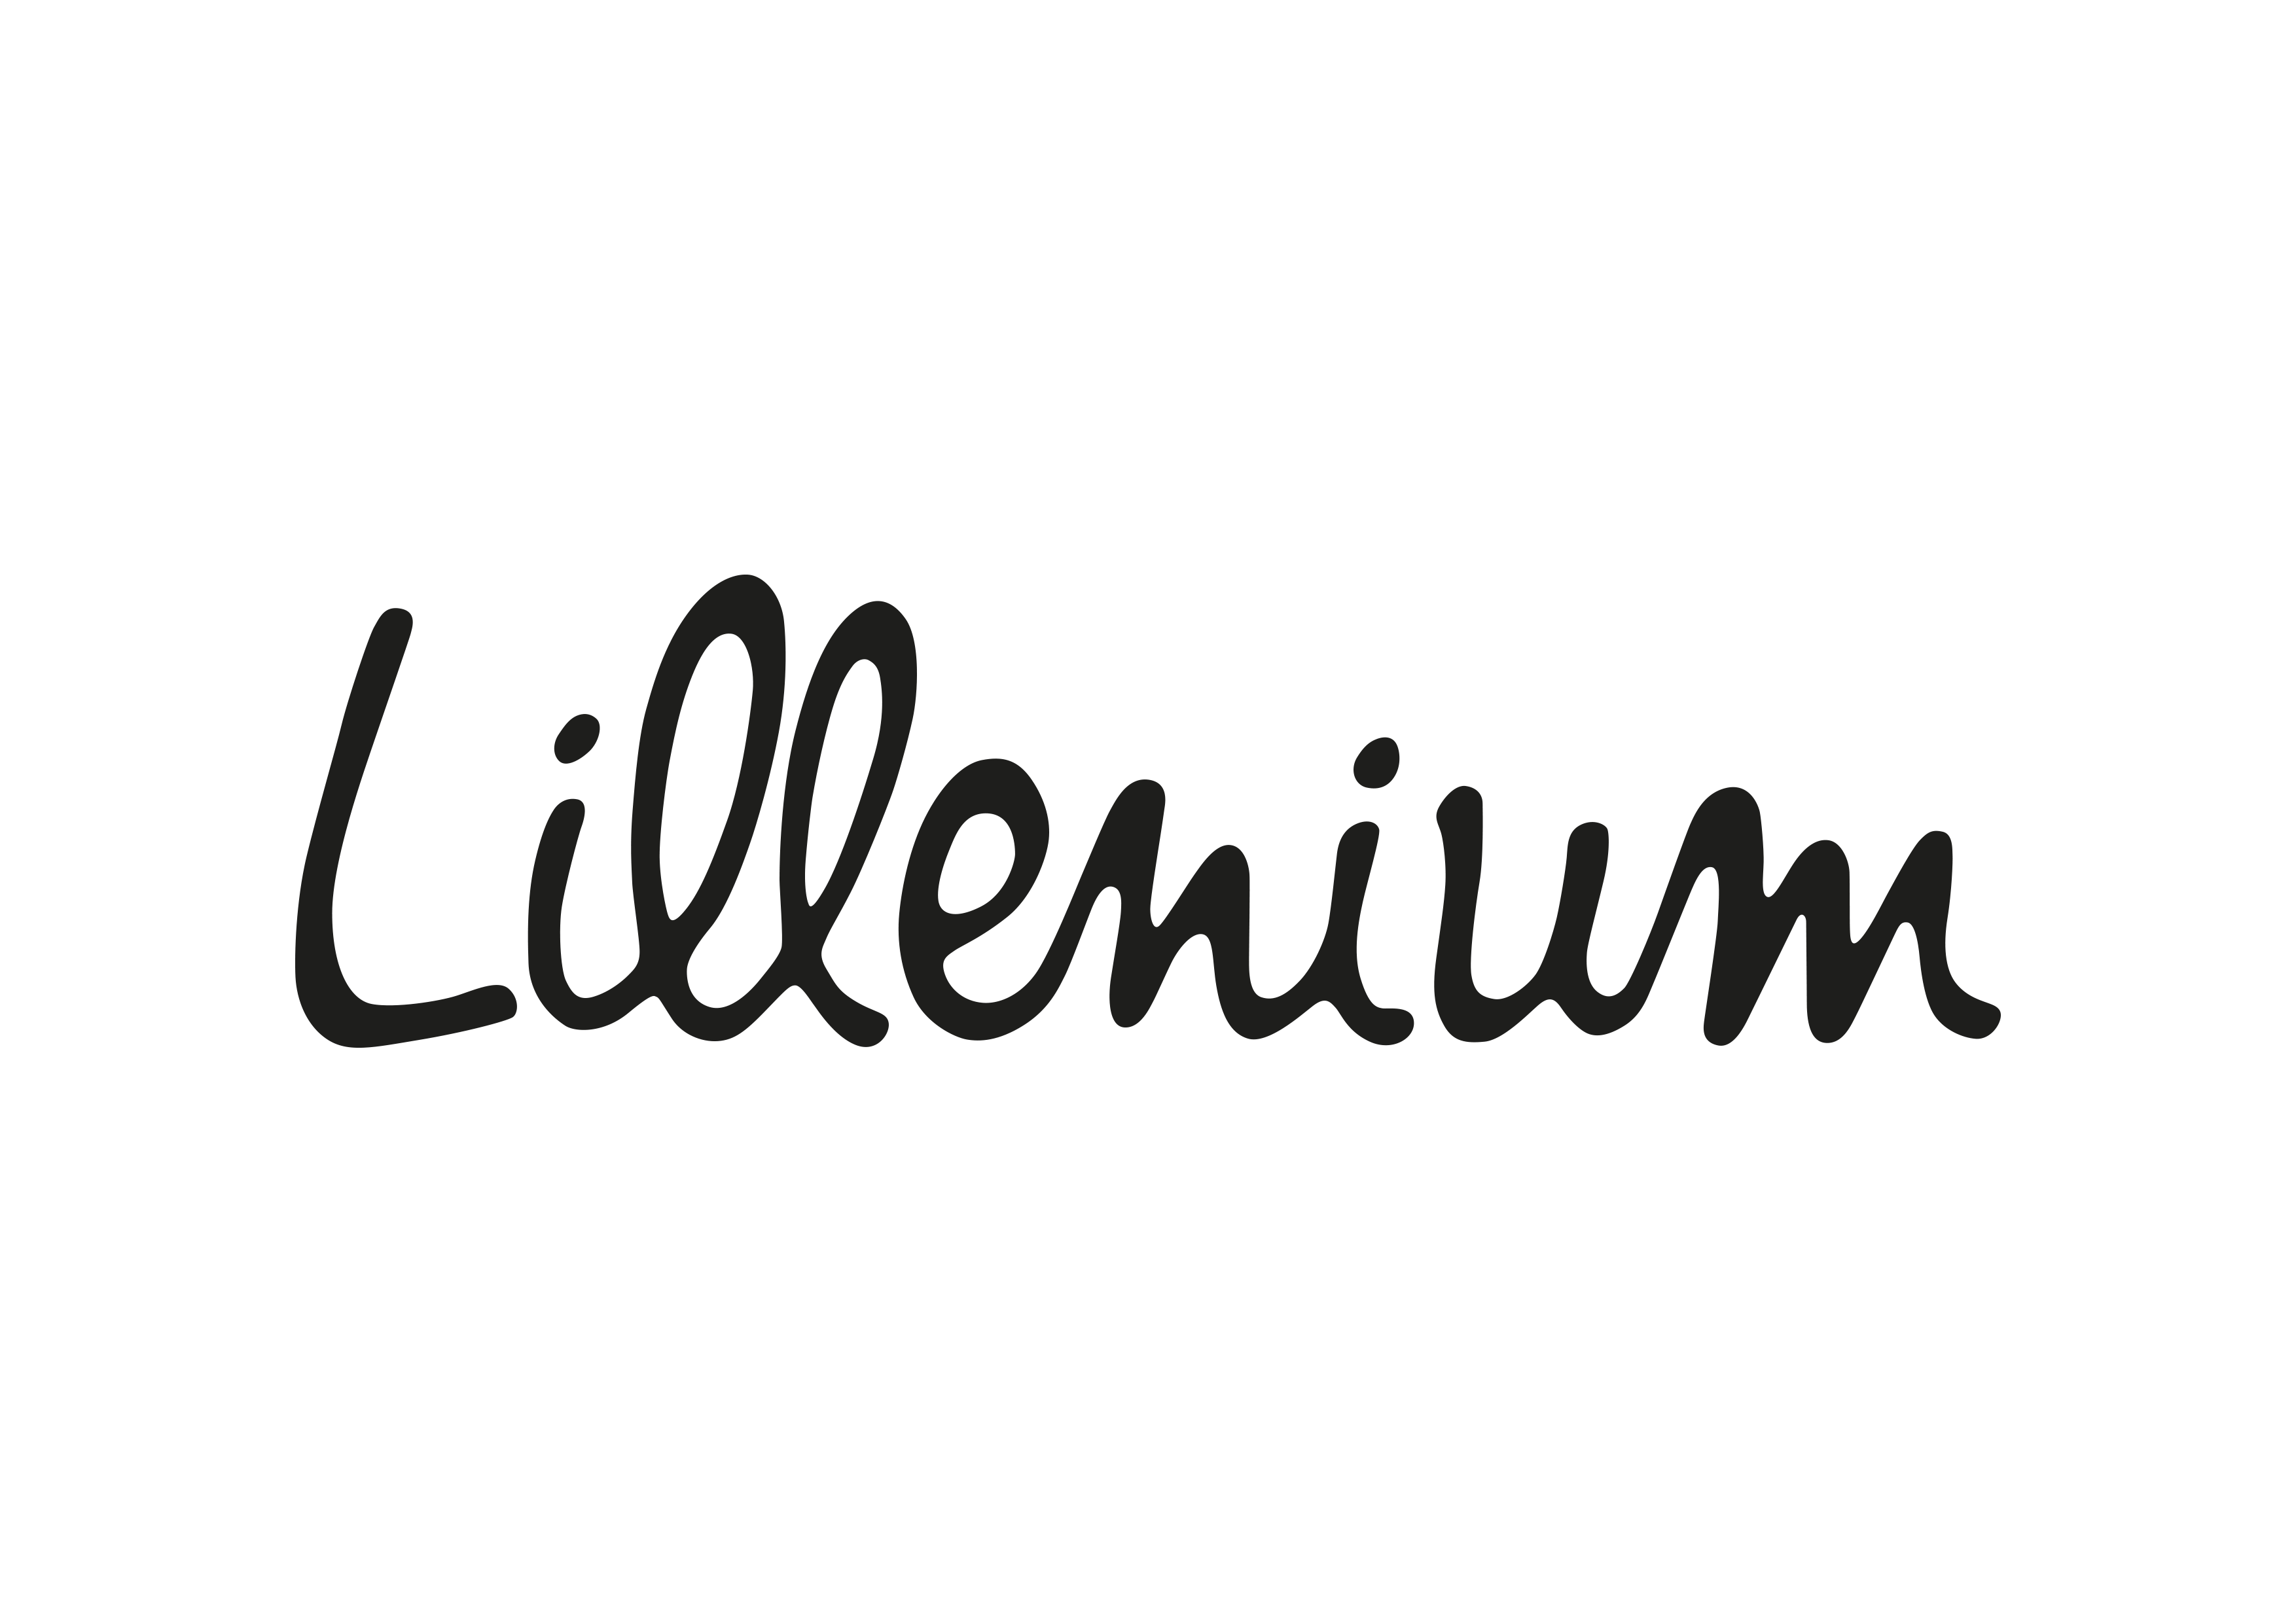 Lillenium